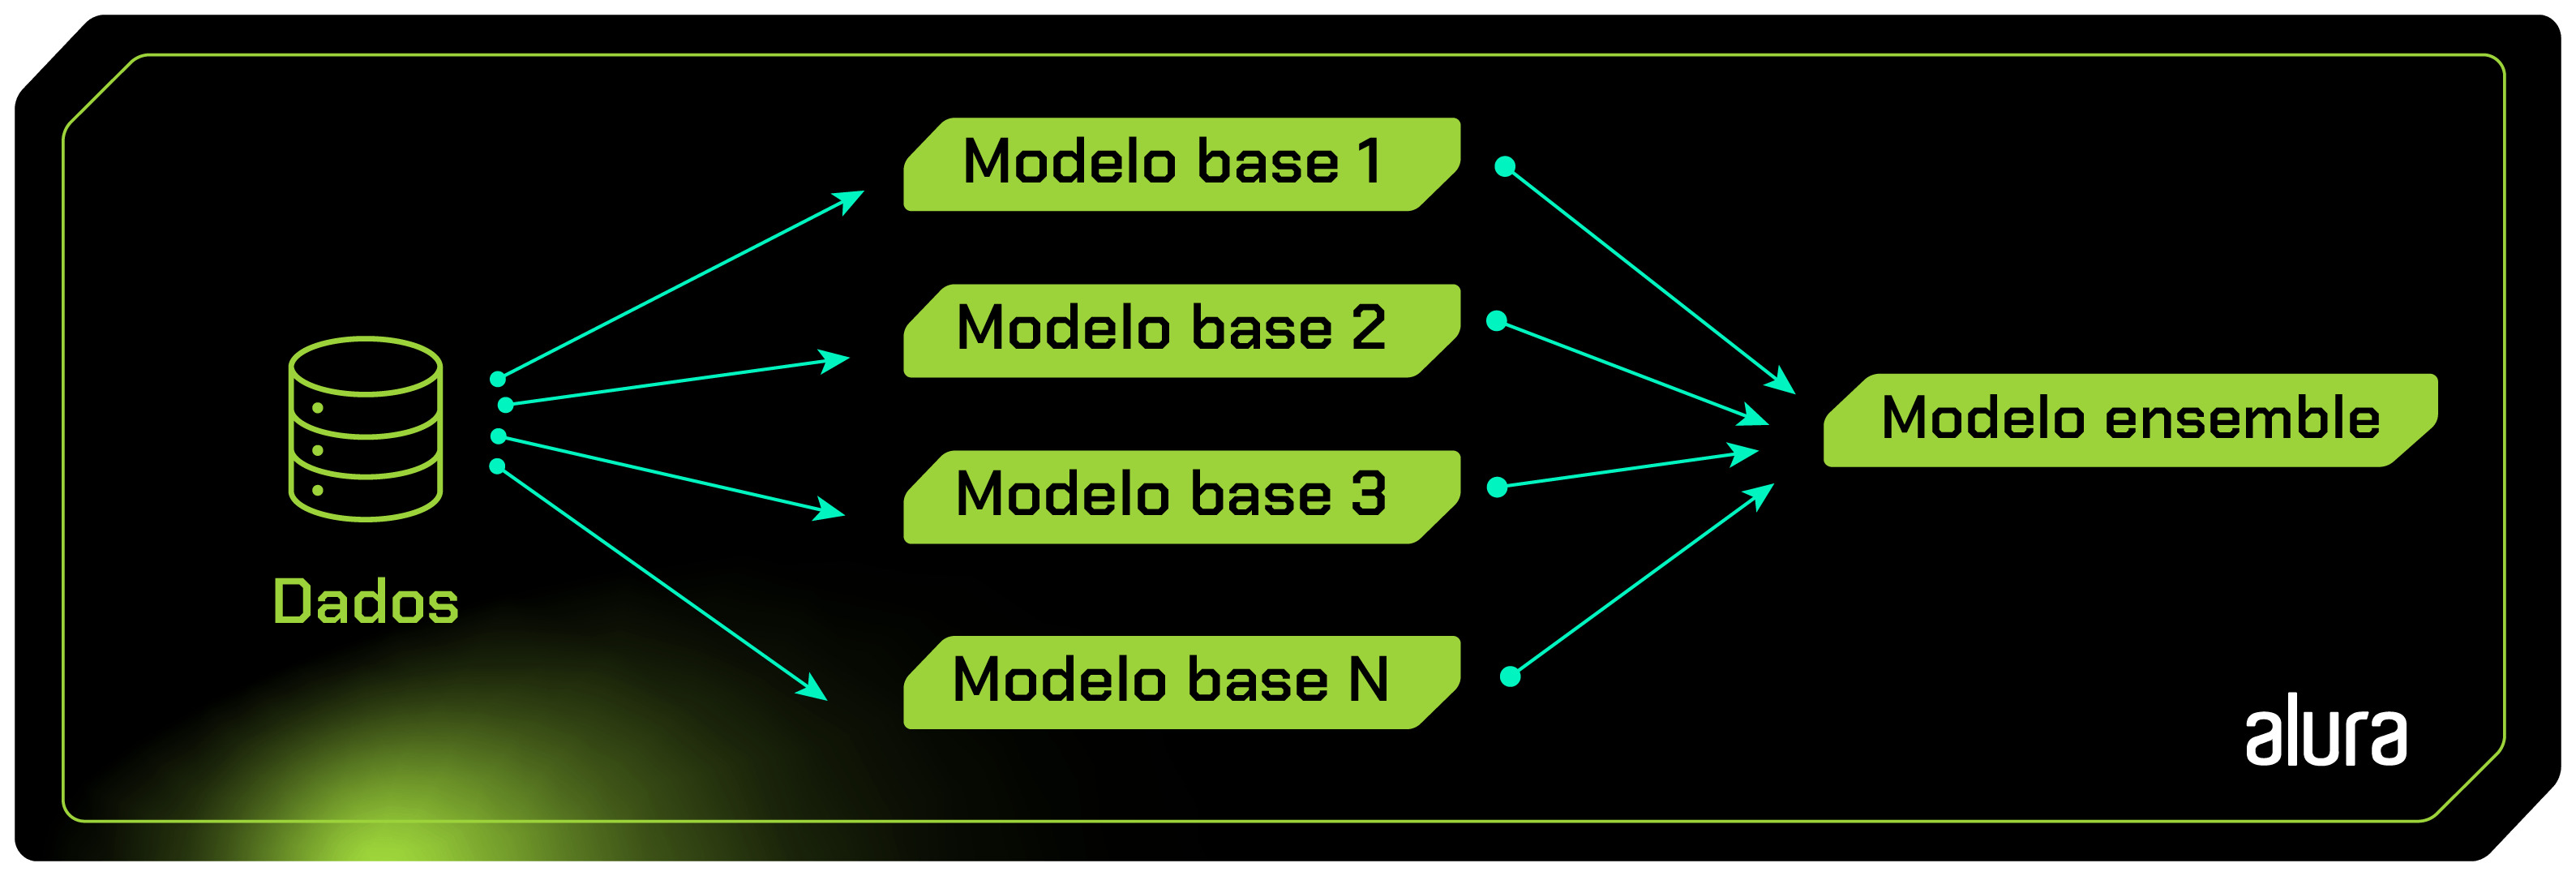 Imagem da representação gráfica do processo de criação do modelo ensemble, dividido em três etapas, em um fluxo da esquerda para a direita. O processo começa com os dados, depois parte para os modelos base e, por fim, são unificados em um modelo ensemble.